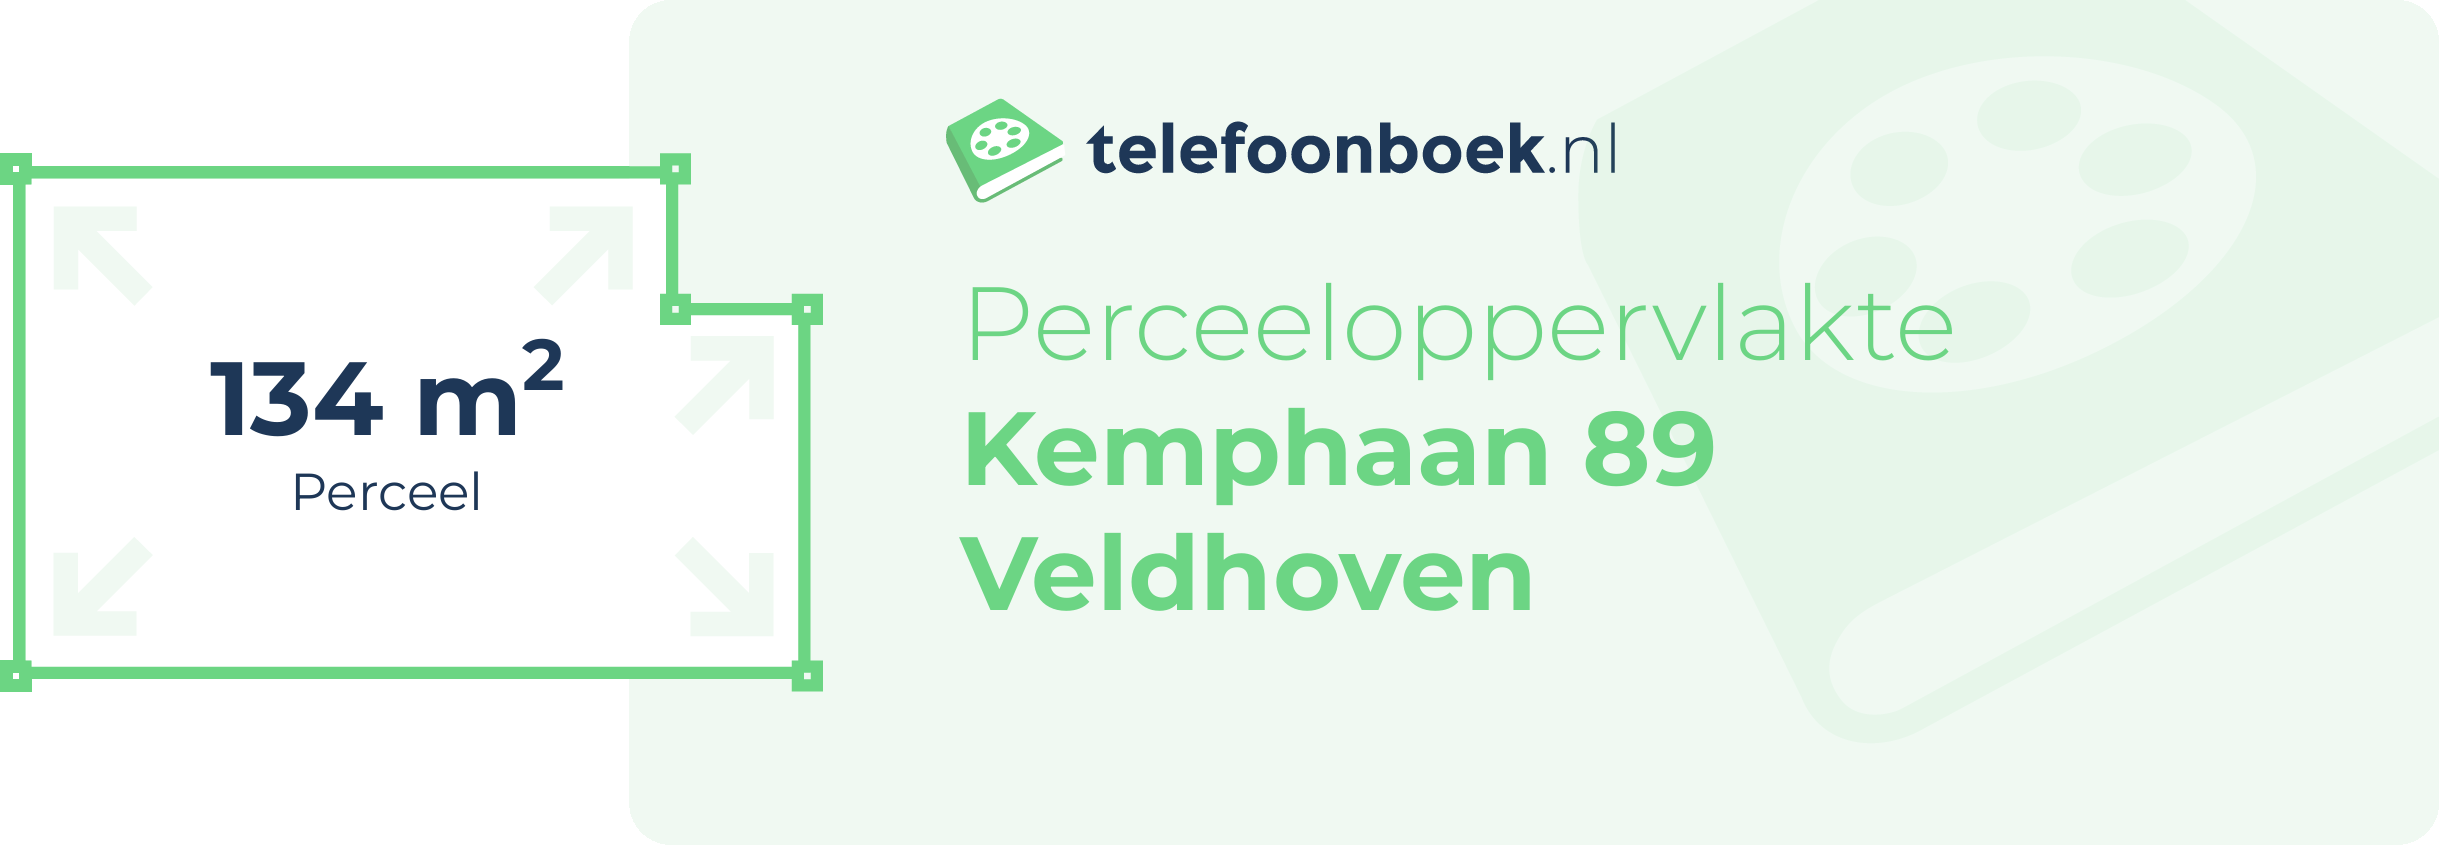 Perceeloppervlakte Kemphaan 89 Veldhoven